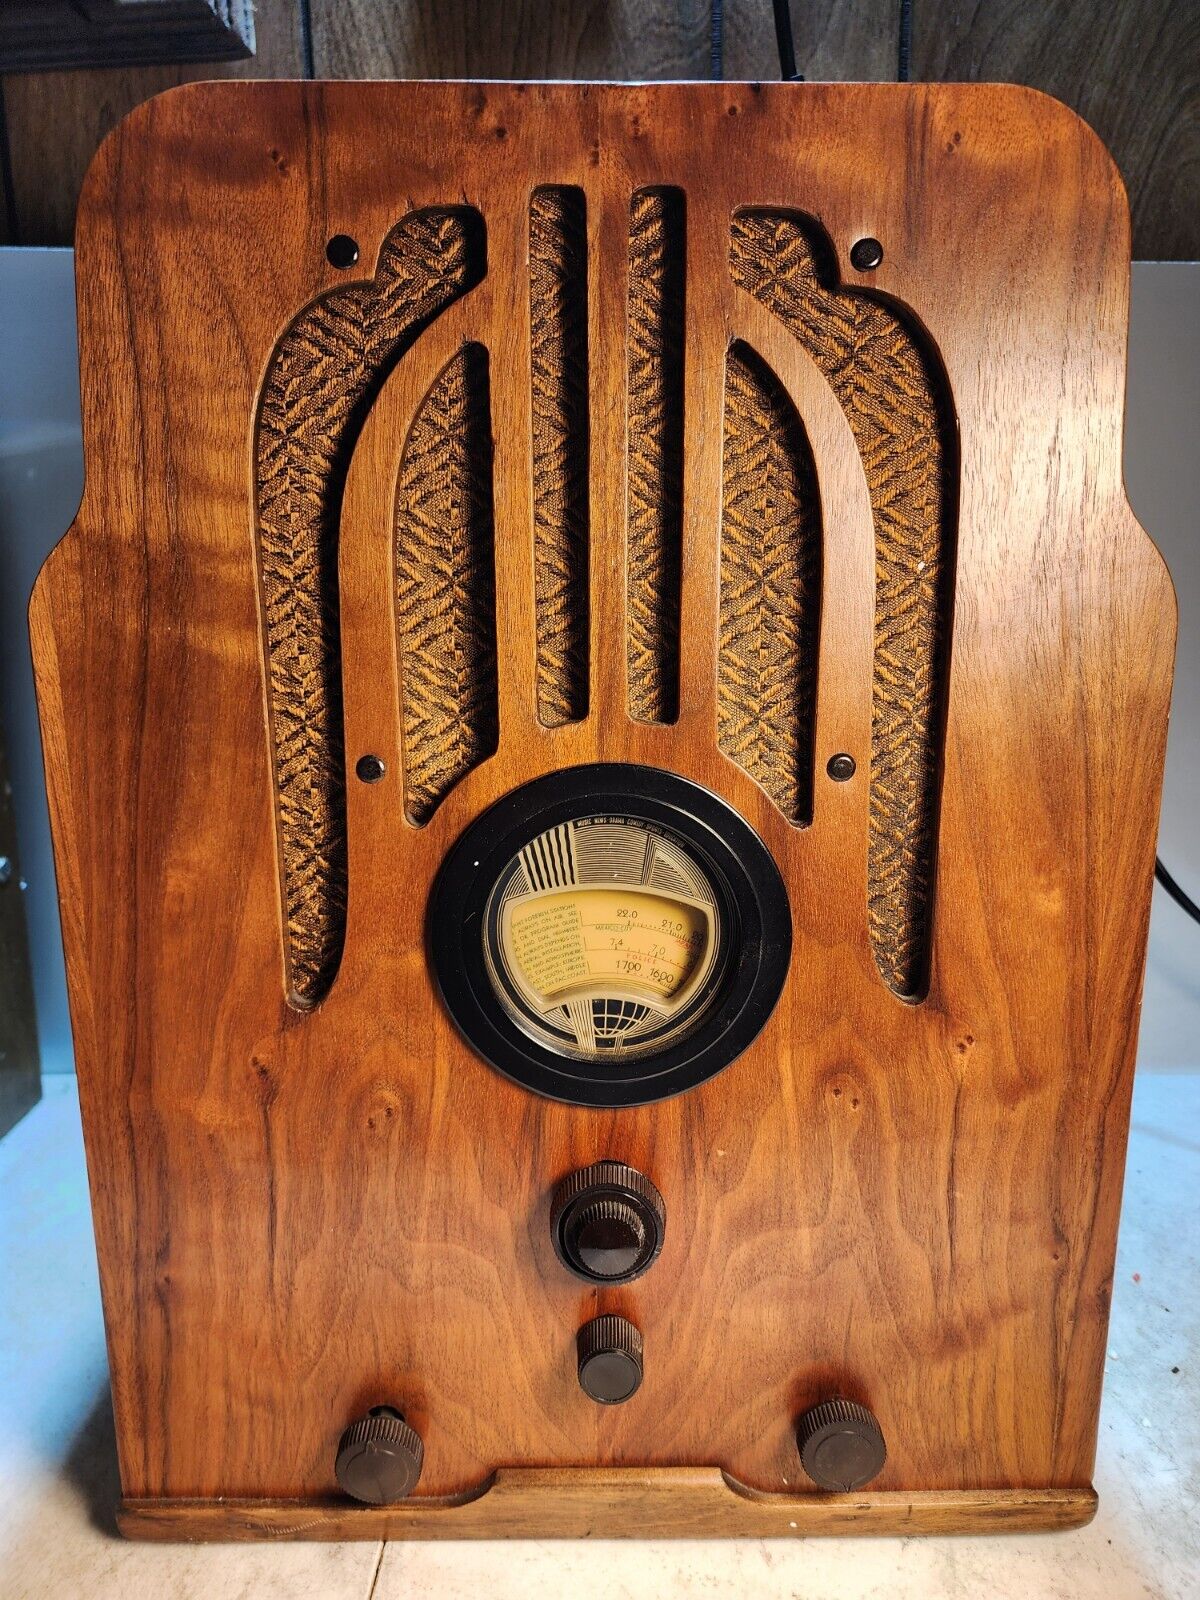 Philco Vintage 1930s Tombstone Table Radio Model 37-620